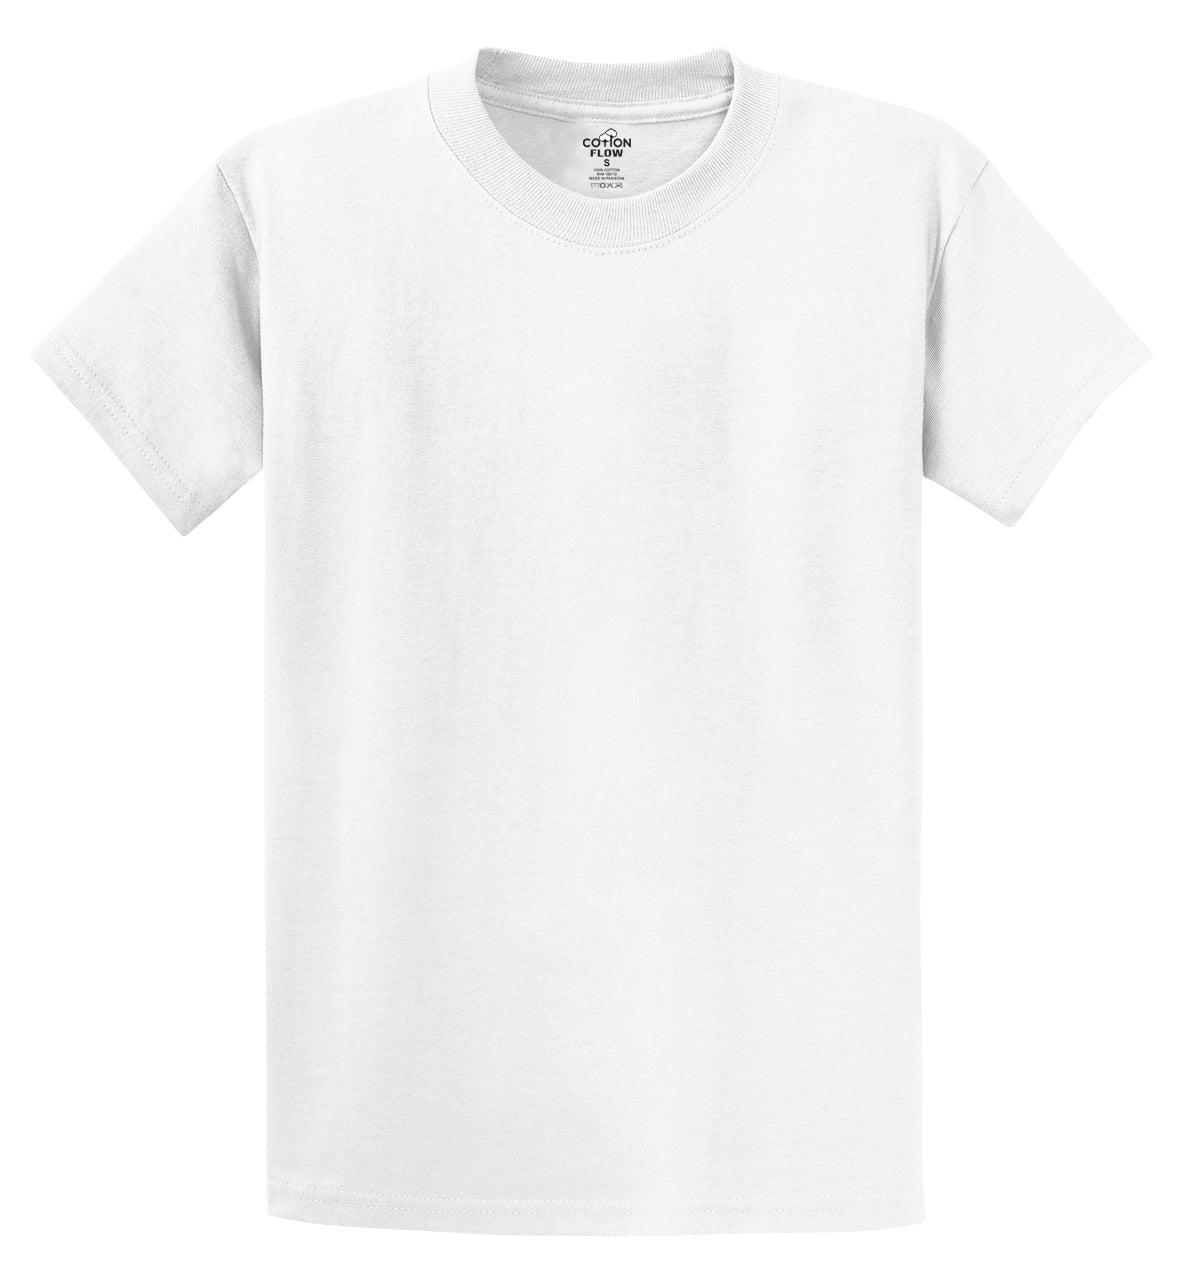 Cotton Flow T-Shirt, Crew Neck